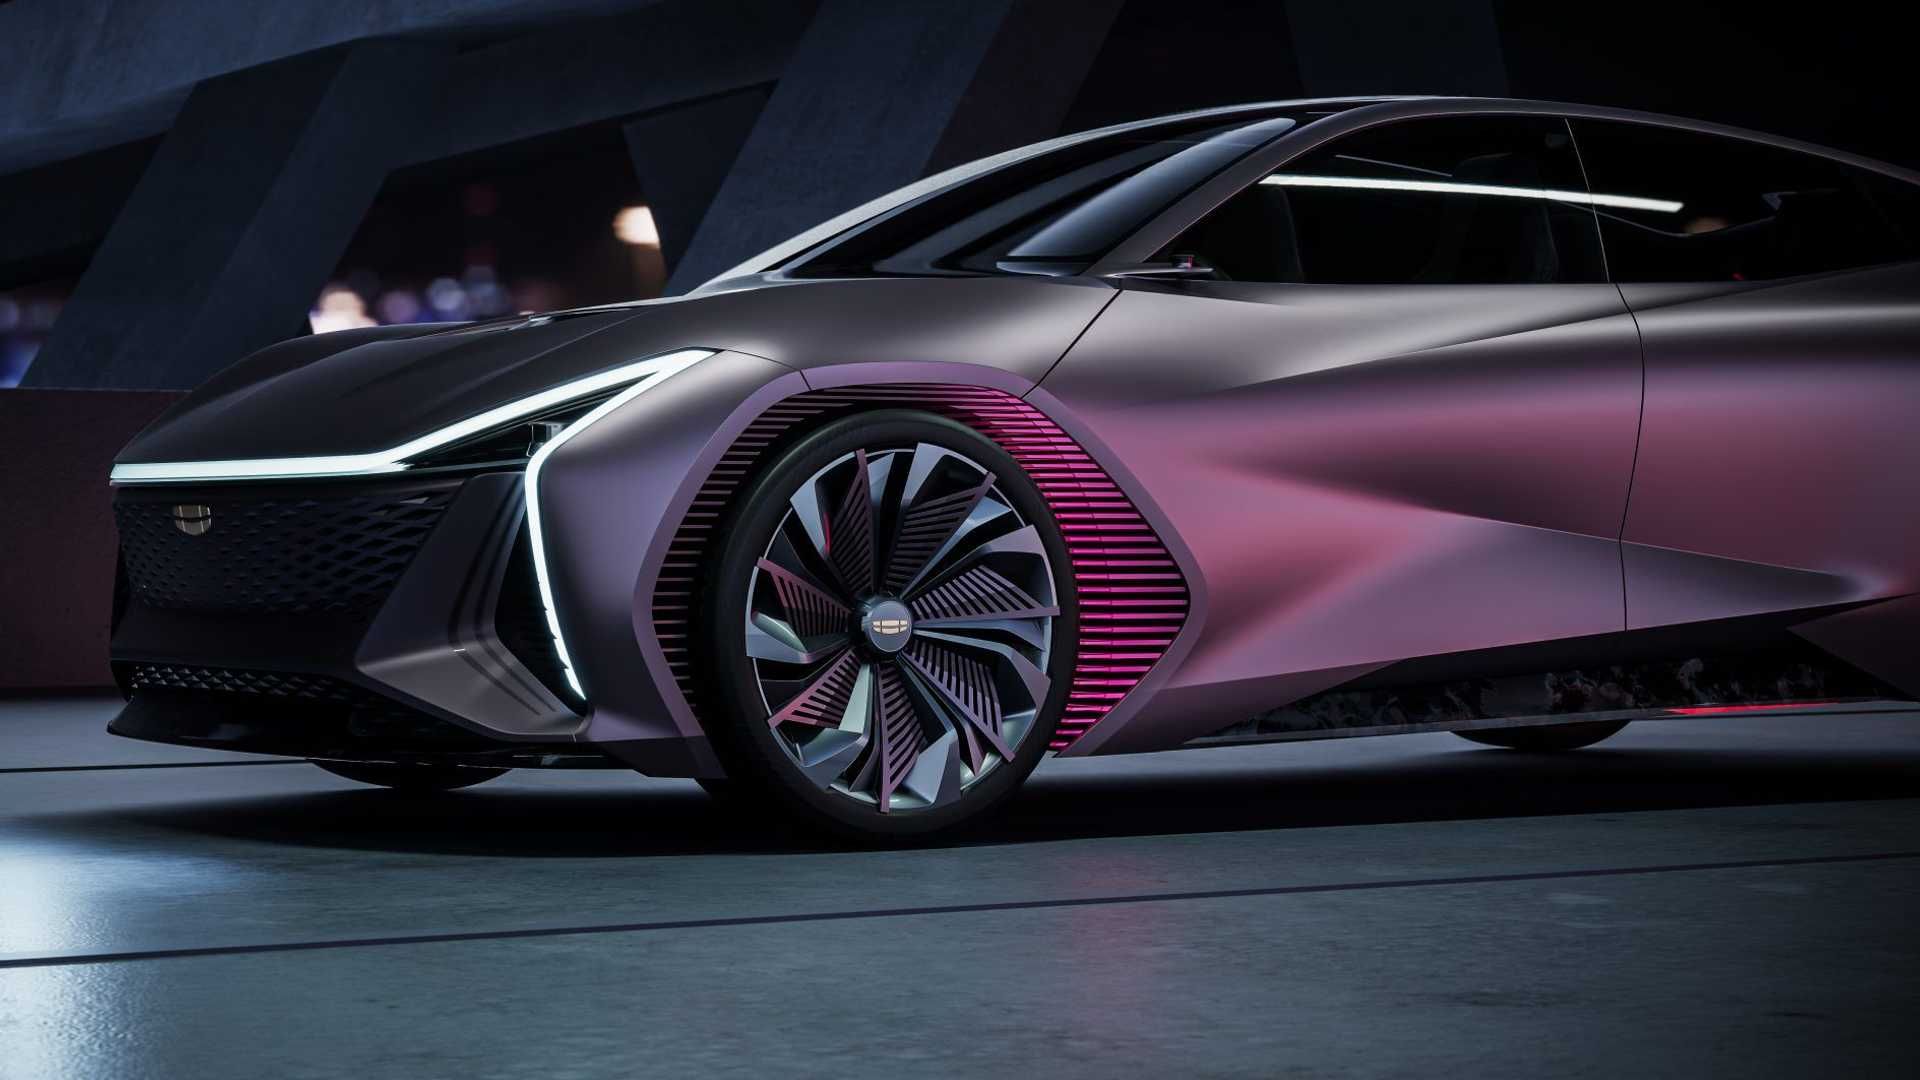 نمای جانبی خودروی مفهومی جیلی ویژن استاربرست / Geely Vision Starburst Concept